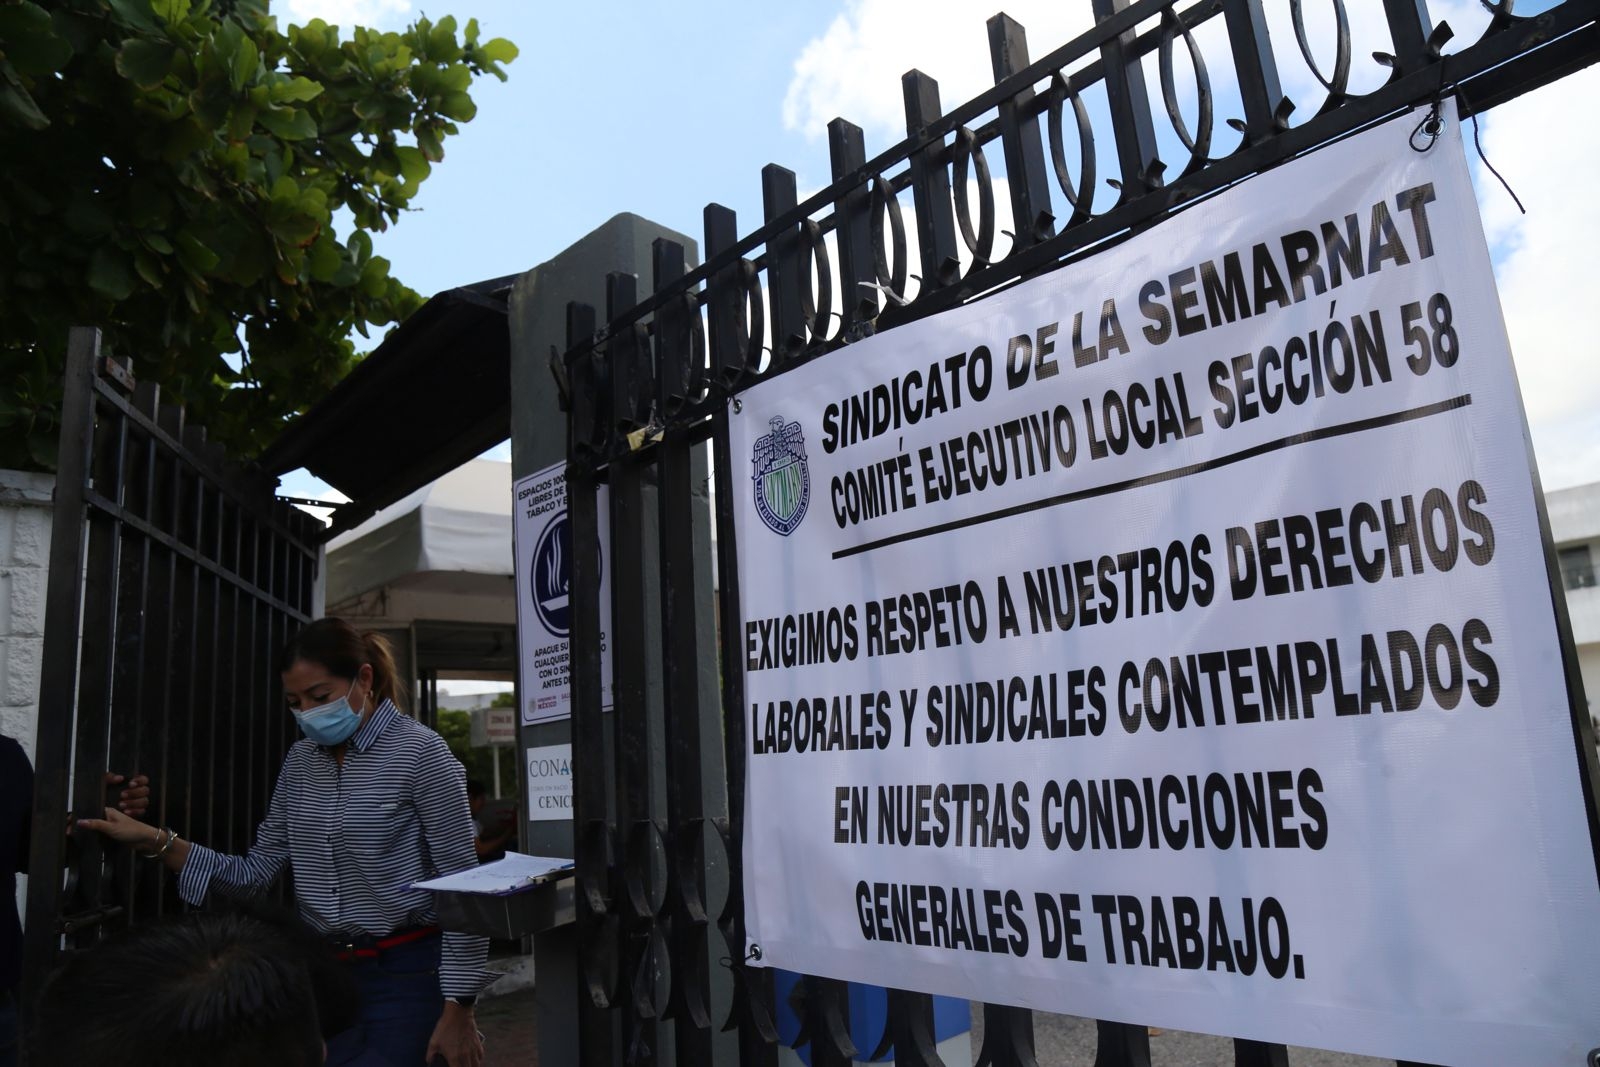 Esta es la tercera ocasión que los sindicalizados de la Semarnat se manifiestan en Mérida